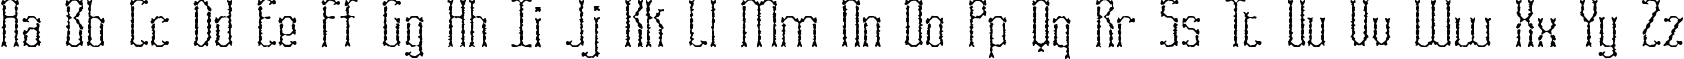 Пример написания английского алфавита шрифтом Fascii Scraggly BRK